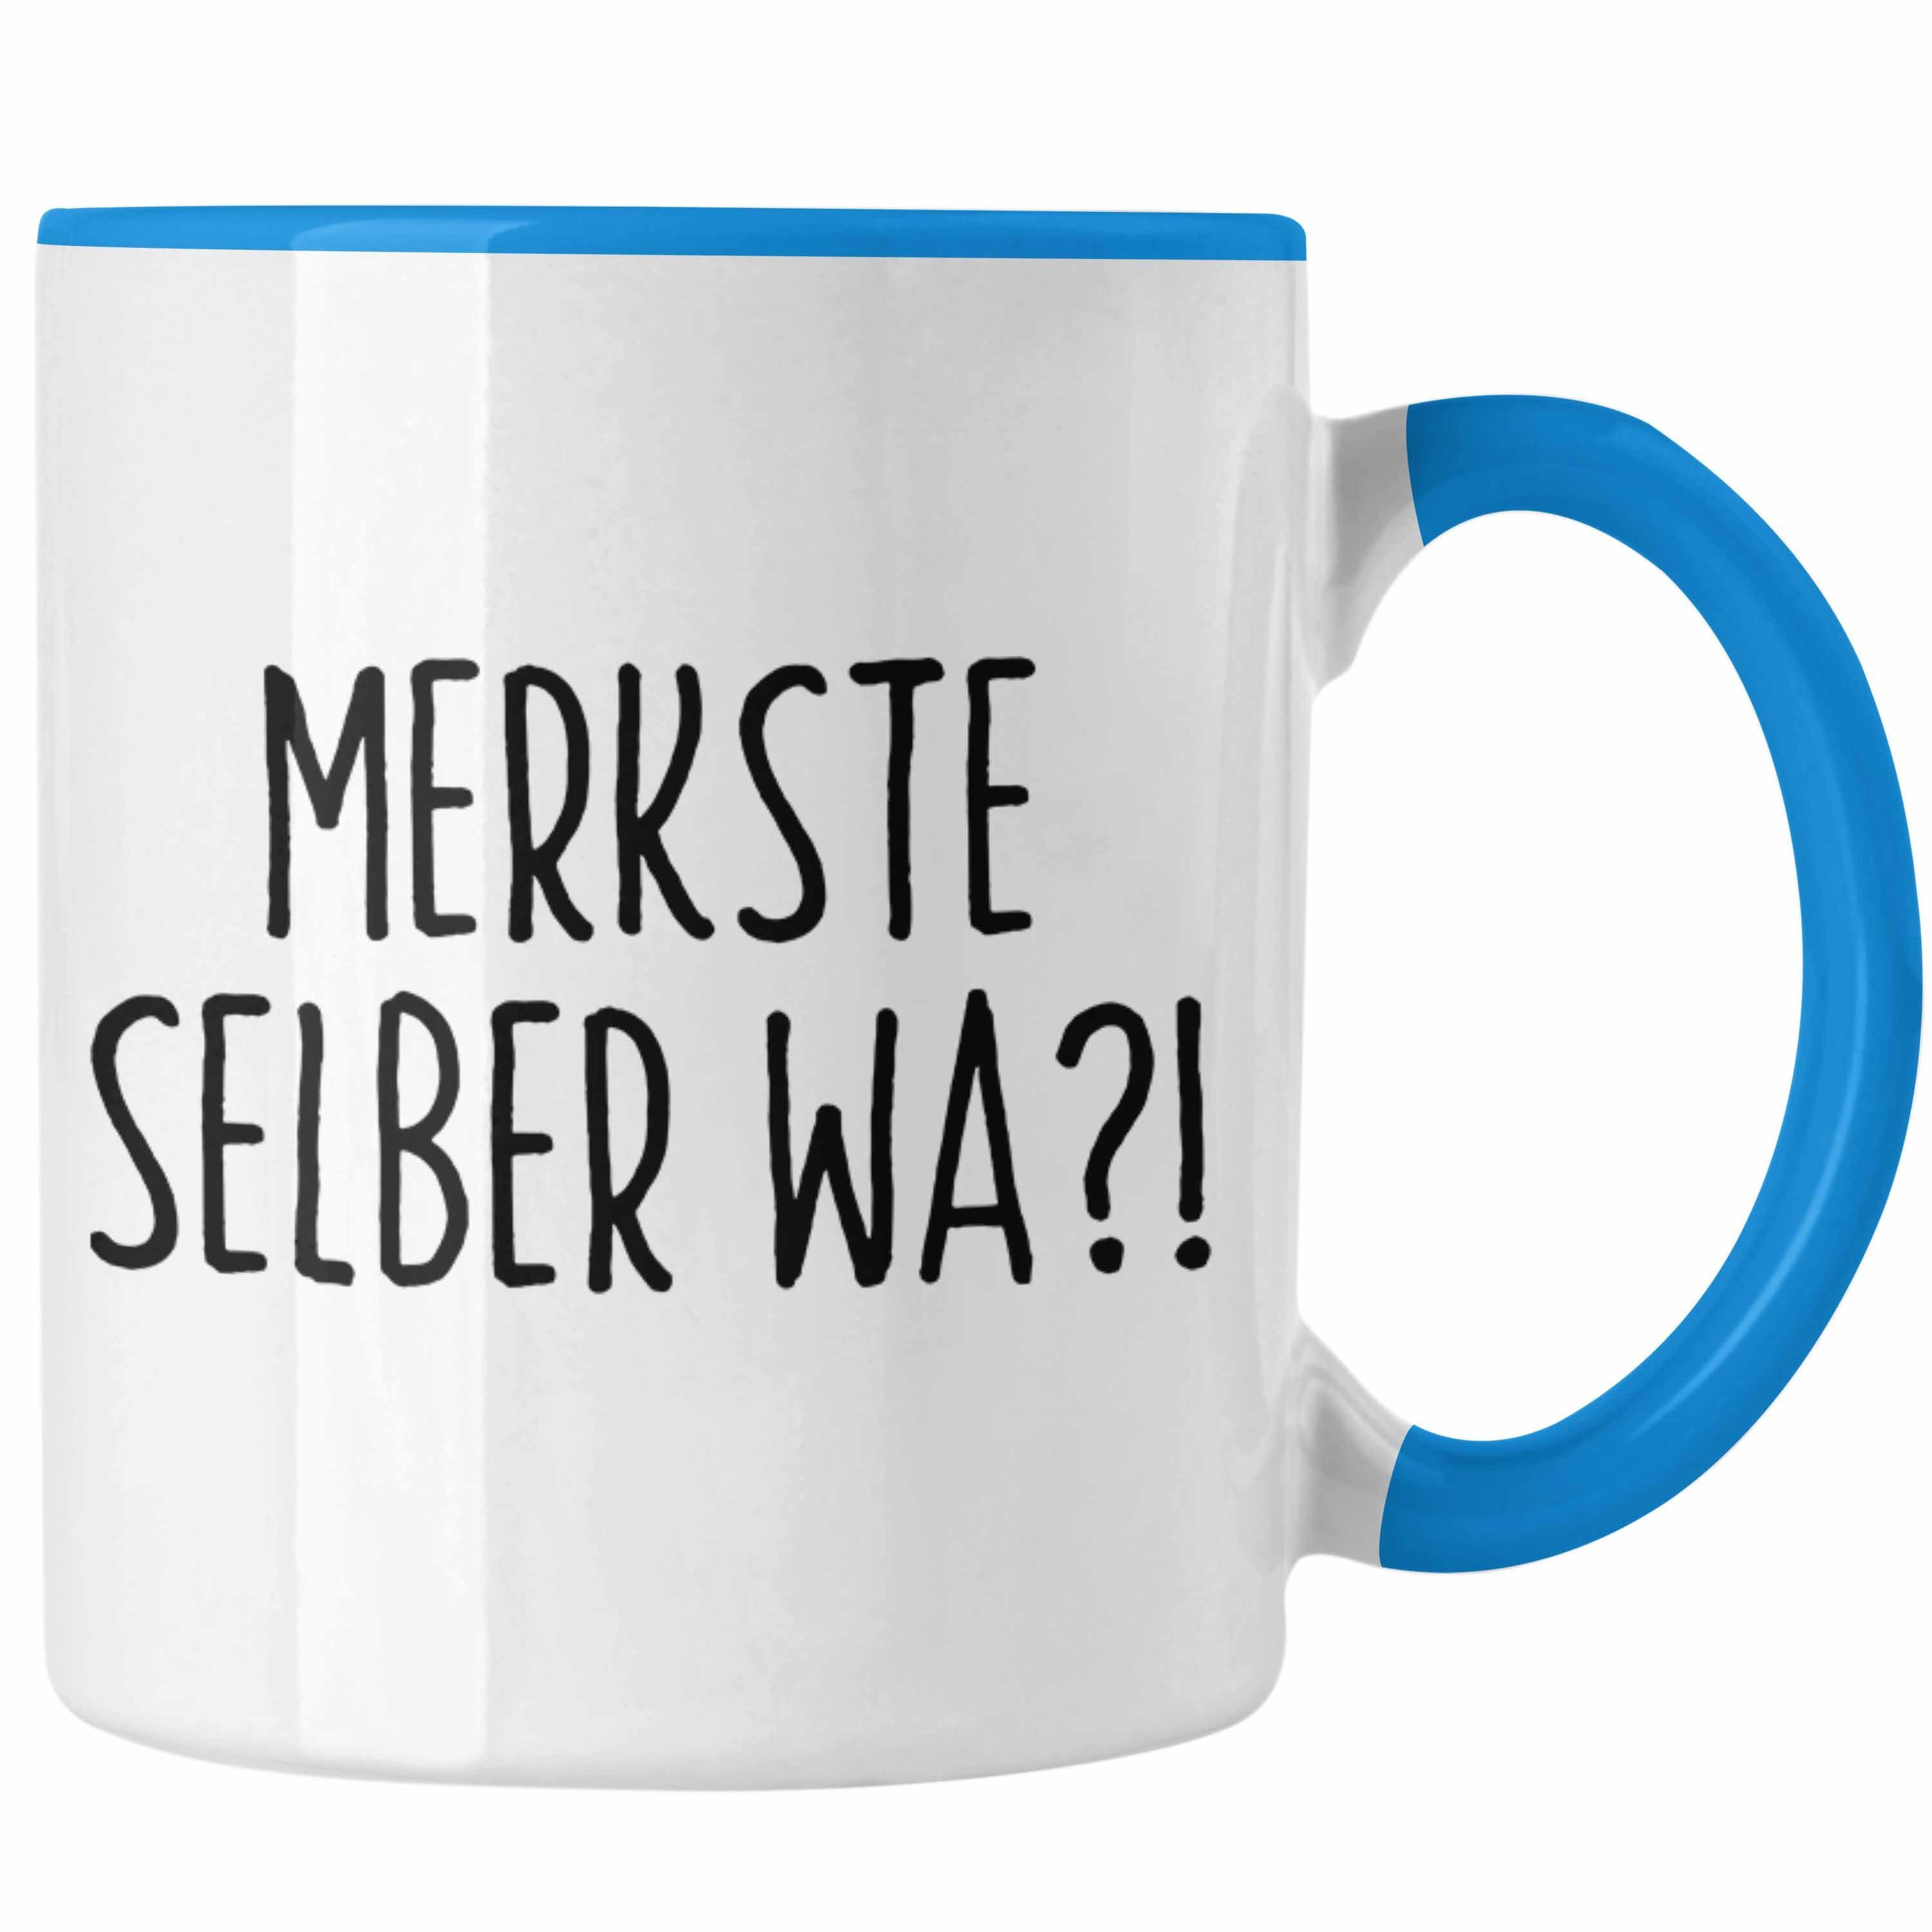 Trendation Tasse Merkste Selber Wa Tasse Geschenk Kaffeebecher mit Spruch Büro Humor Blau